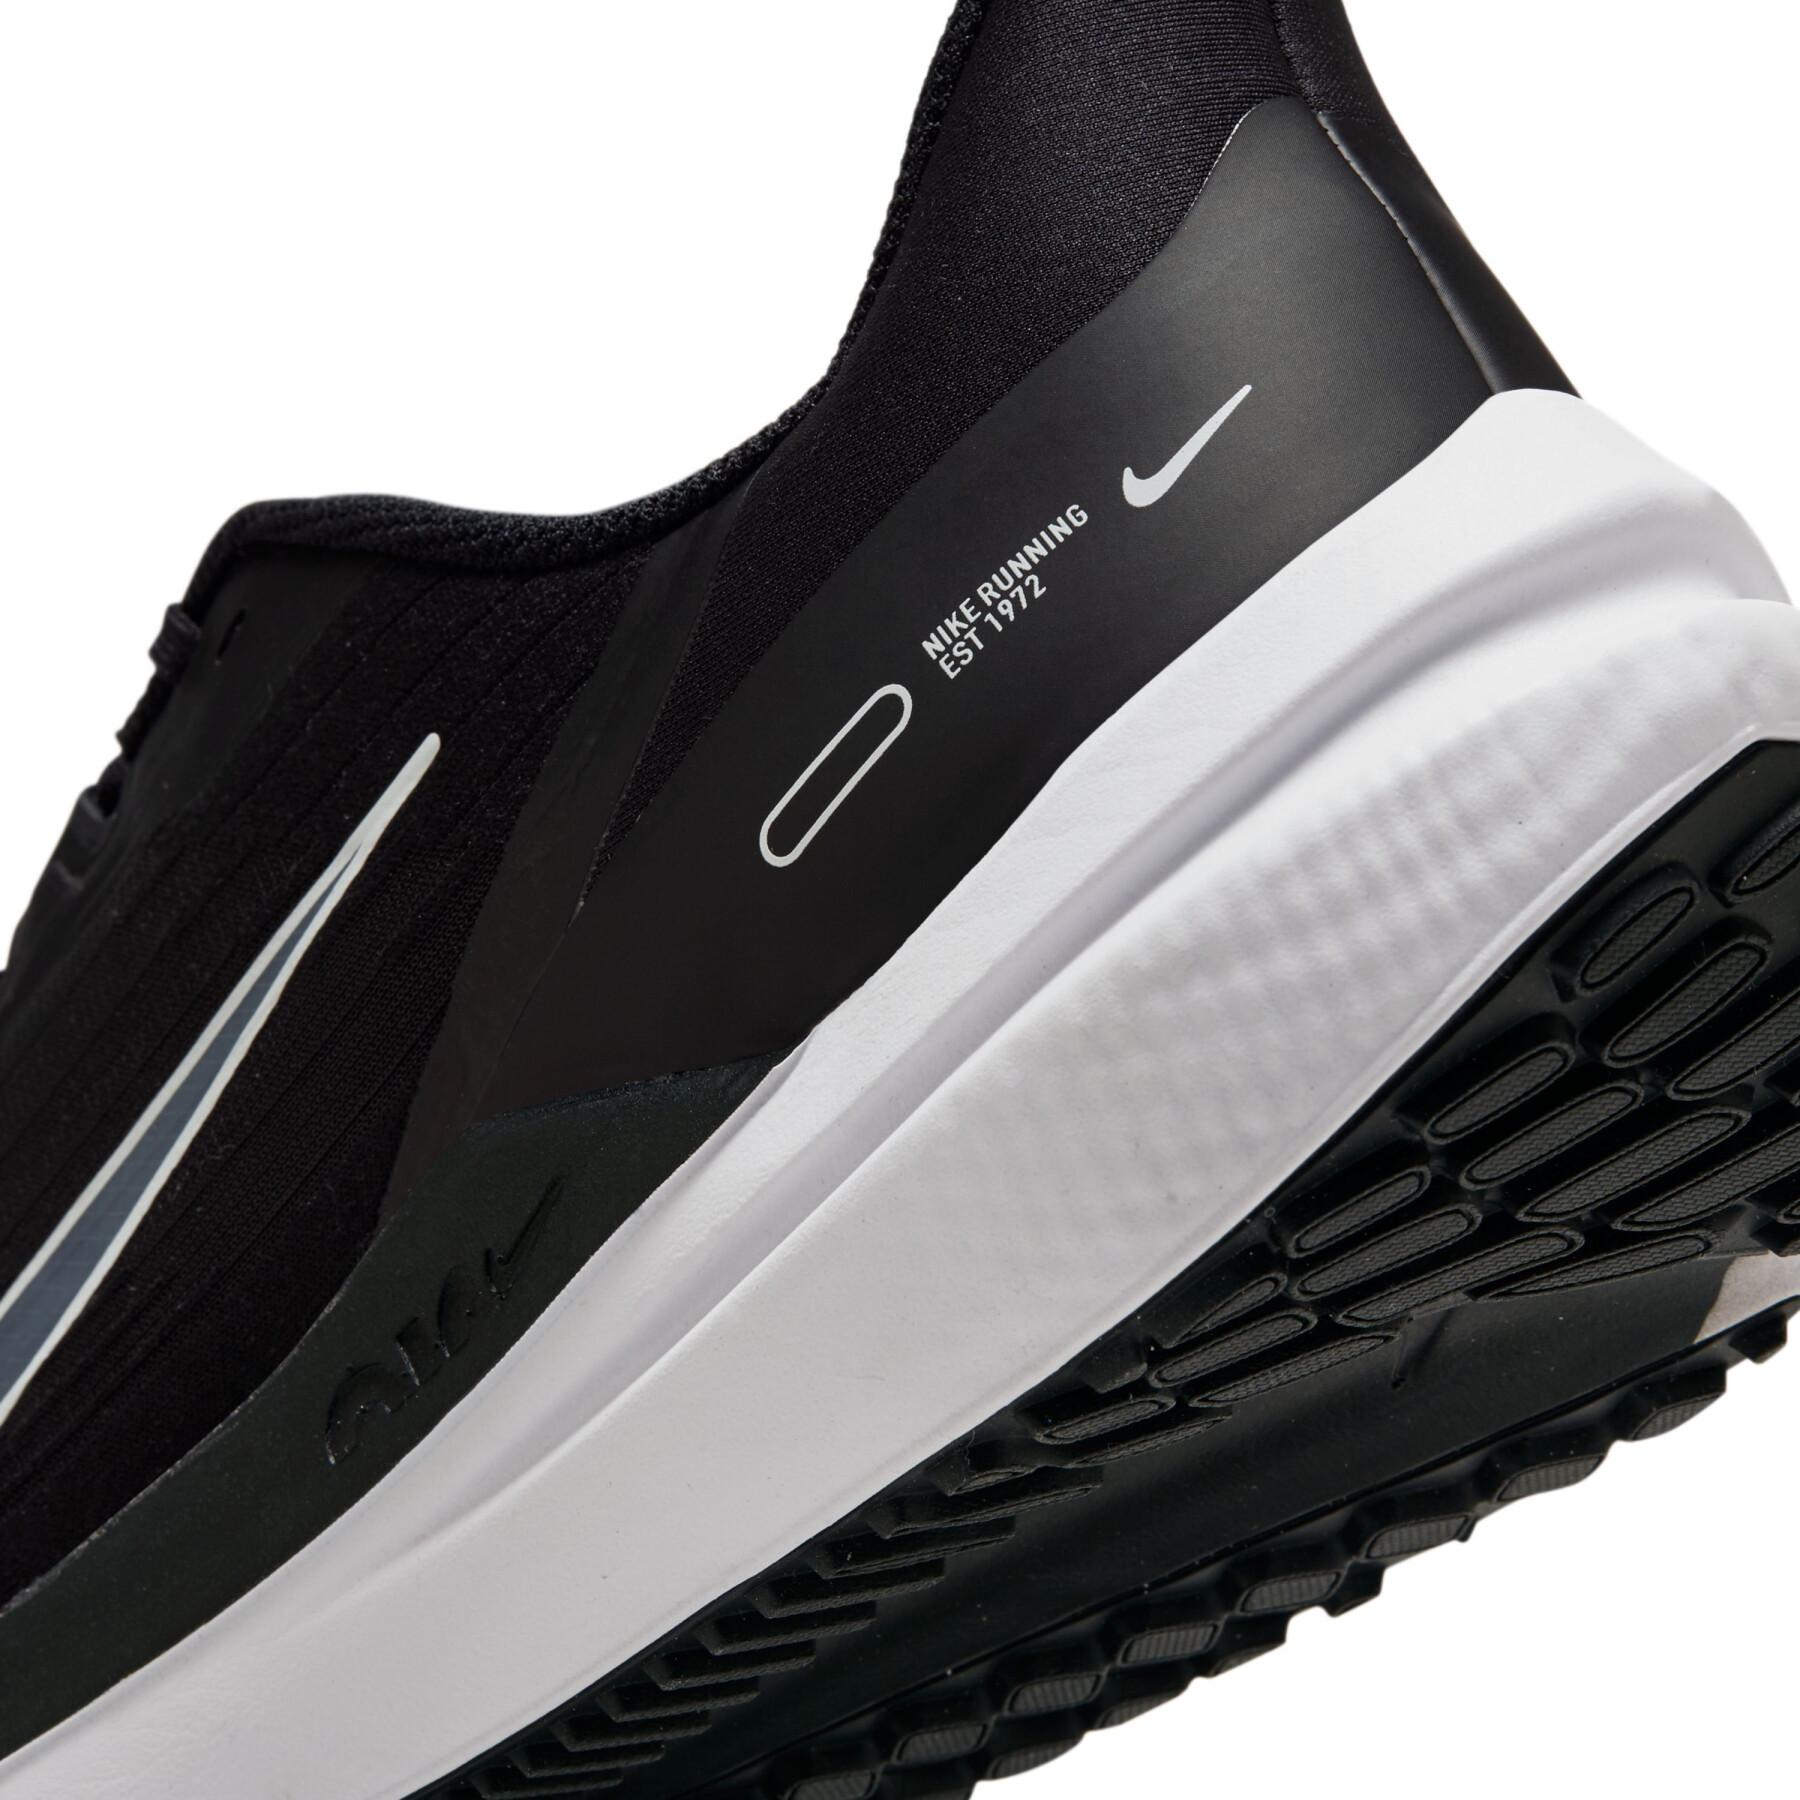 Loopschoenen Nike